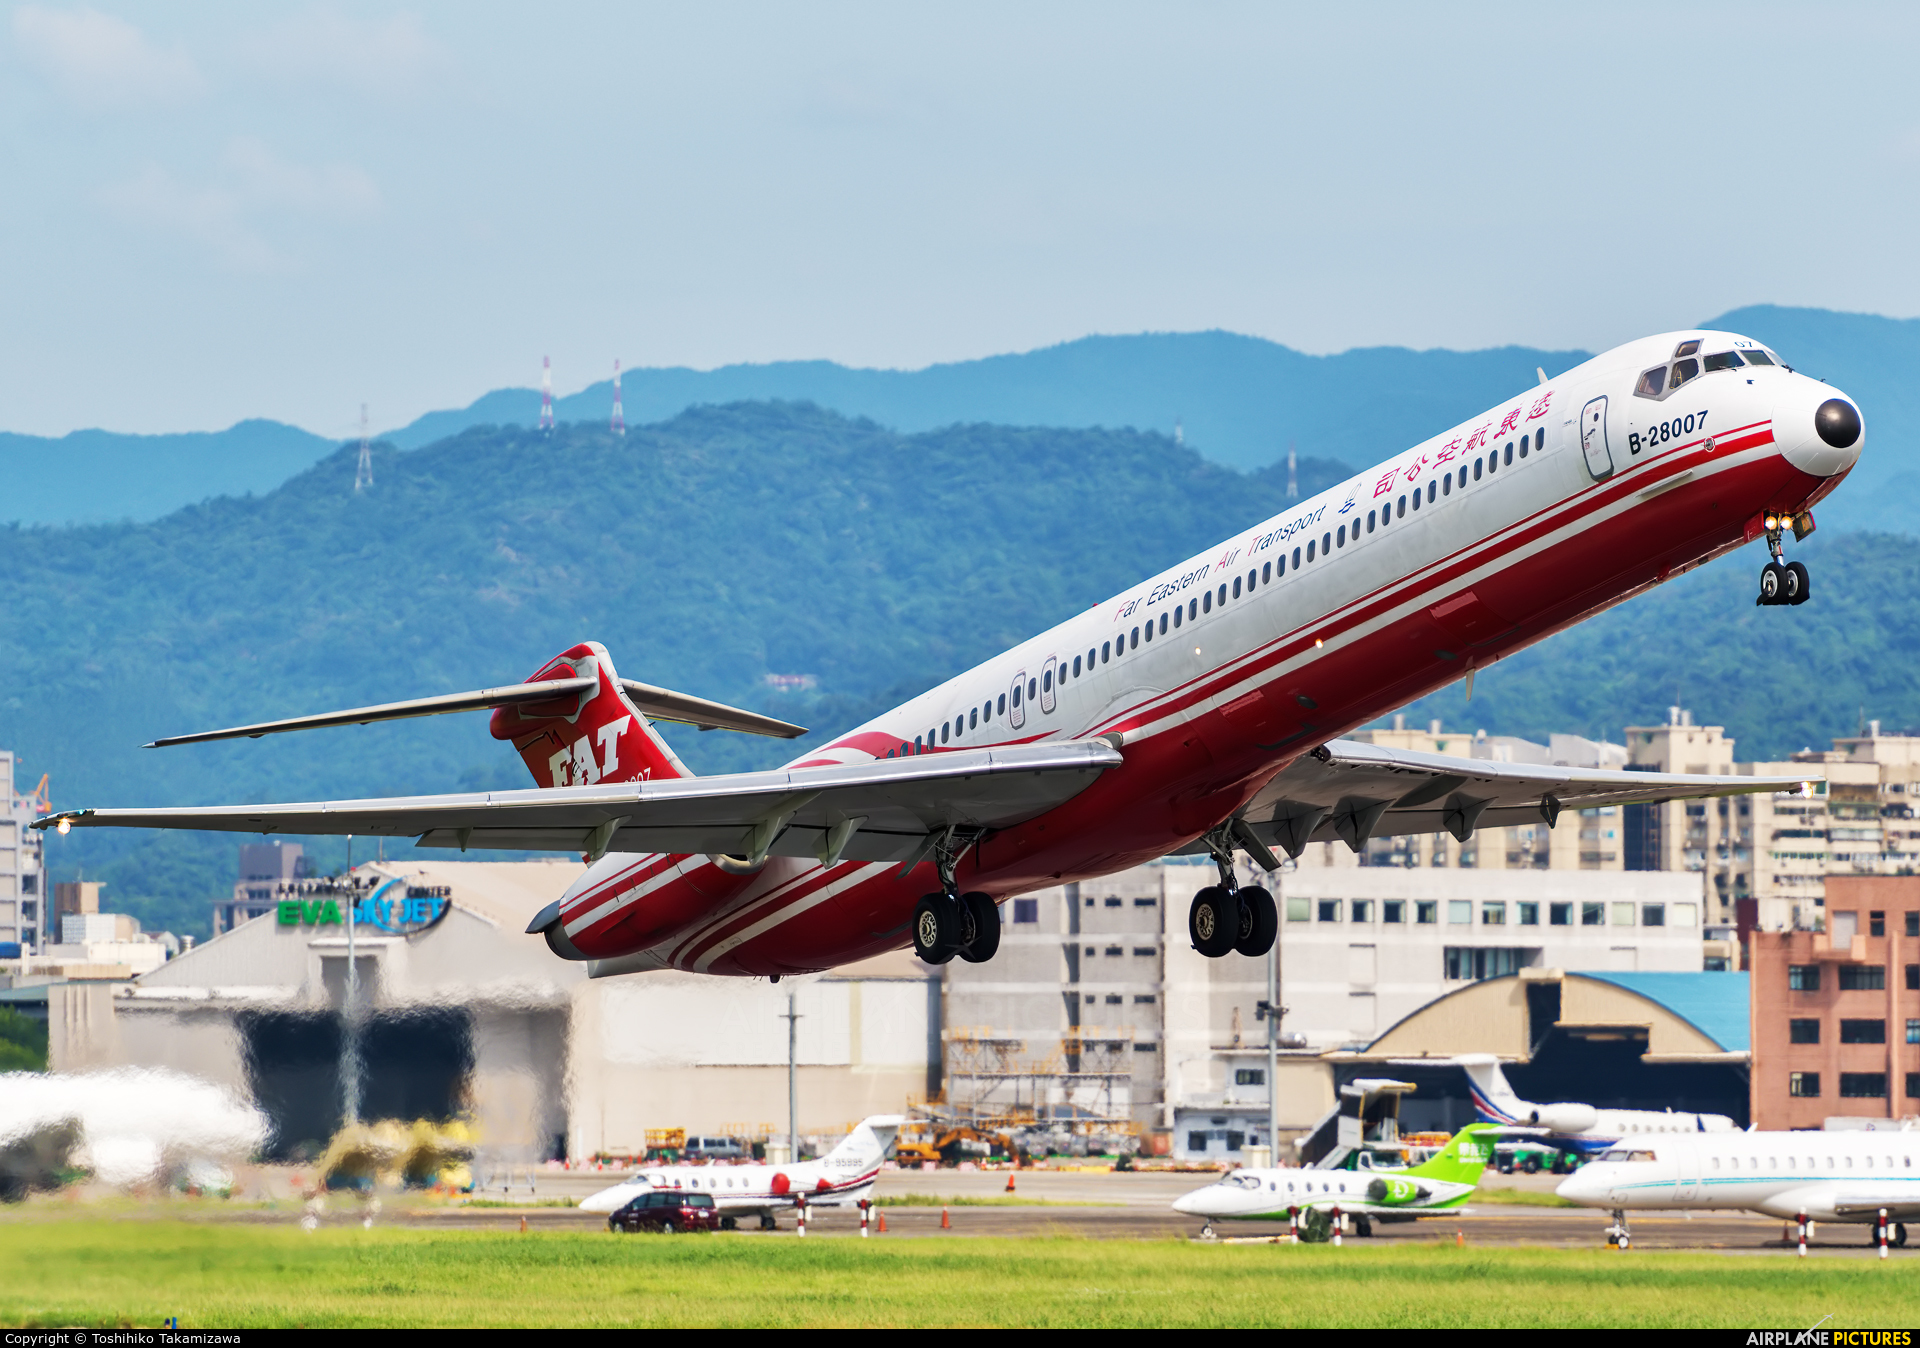 Far Eastern Air Transport B-28007 aircraft at Taipei Sung Shan/Songshan Airport